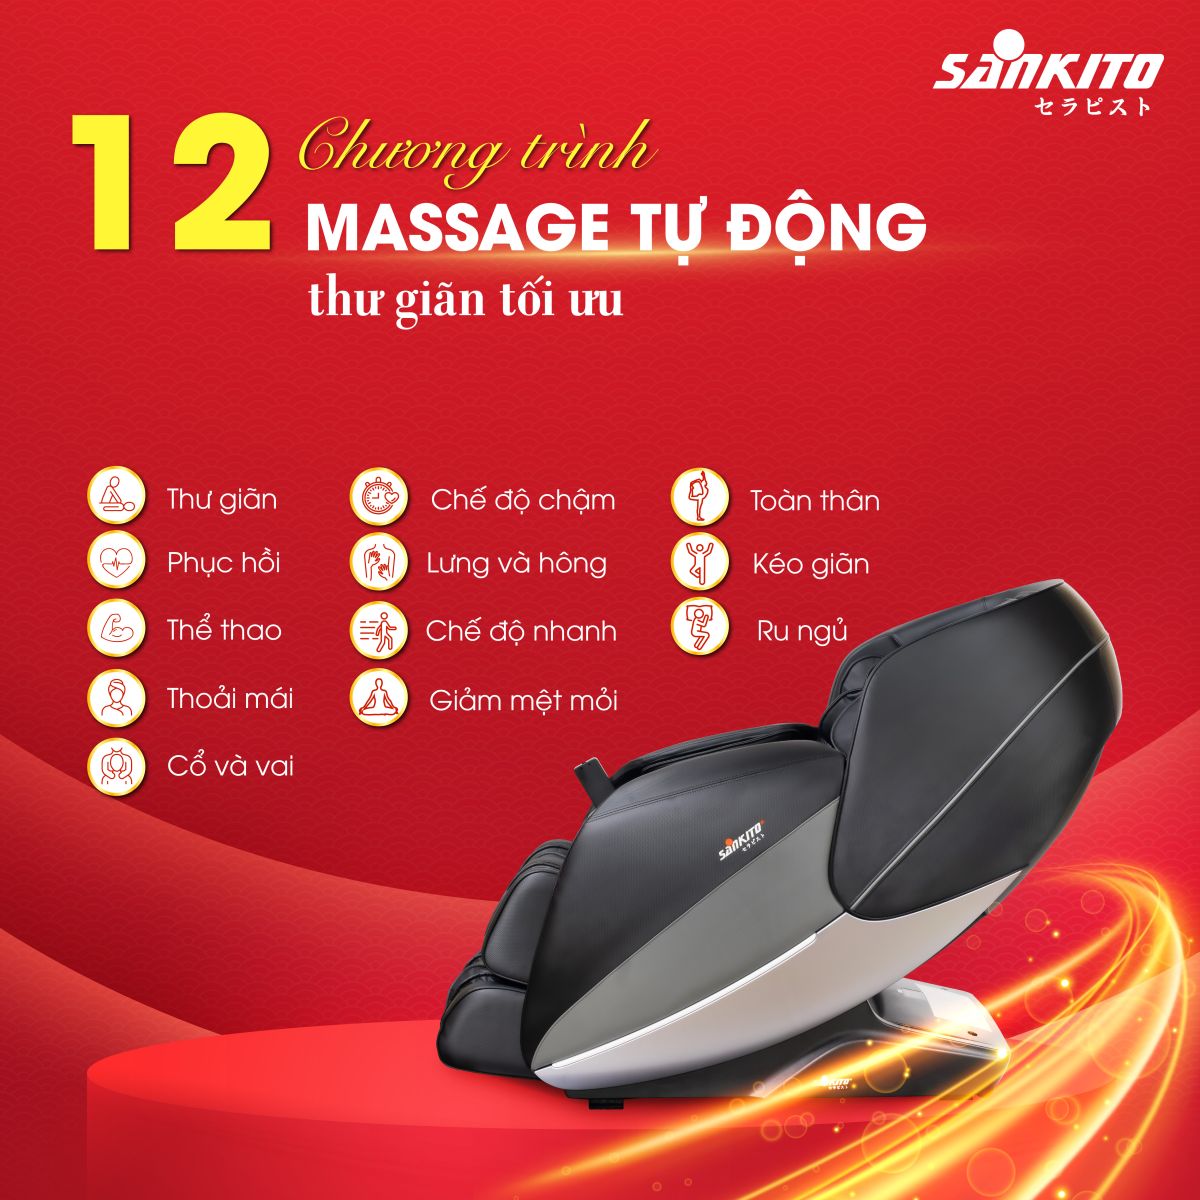 Ghế Massage Sankito S-80 Đa dạng chương trình massage 